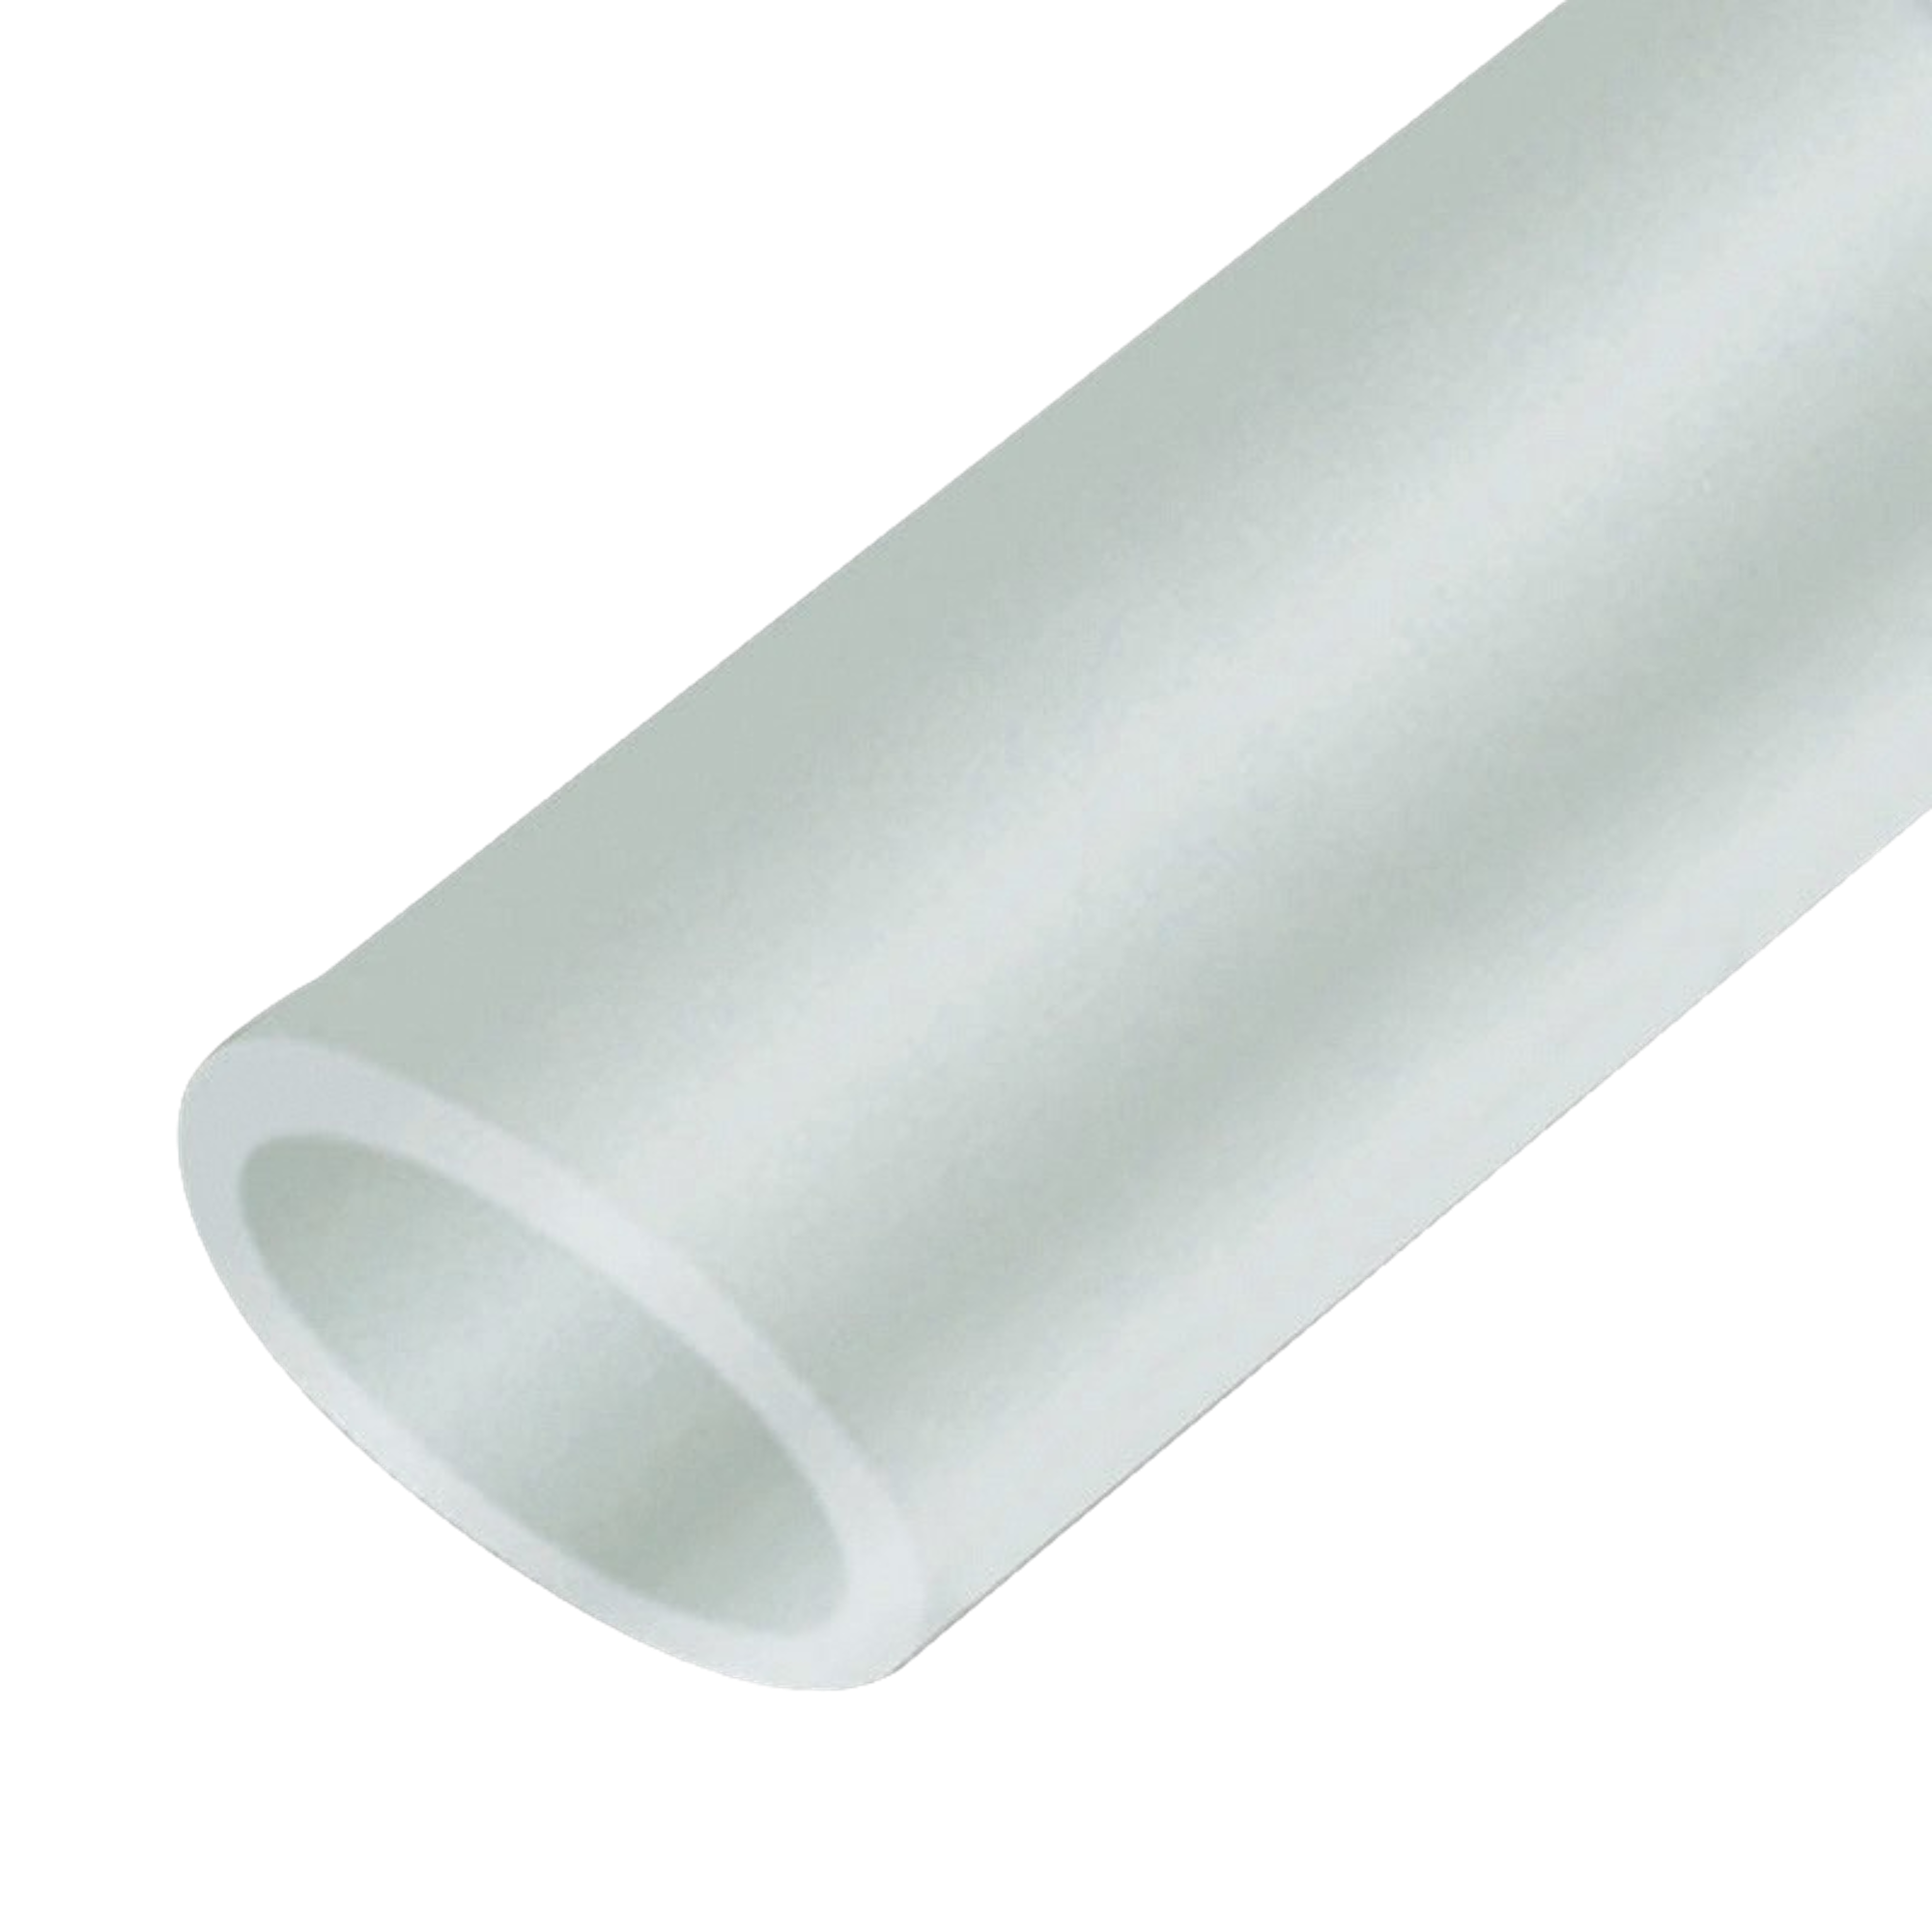 Protection tubulaire pur gel - Taille L - Paquet de 5 pièces // Destockage 